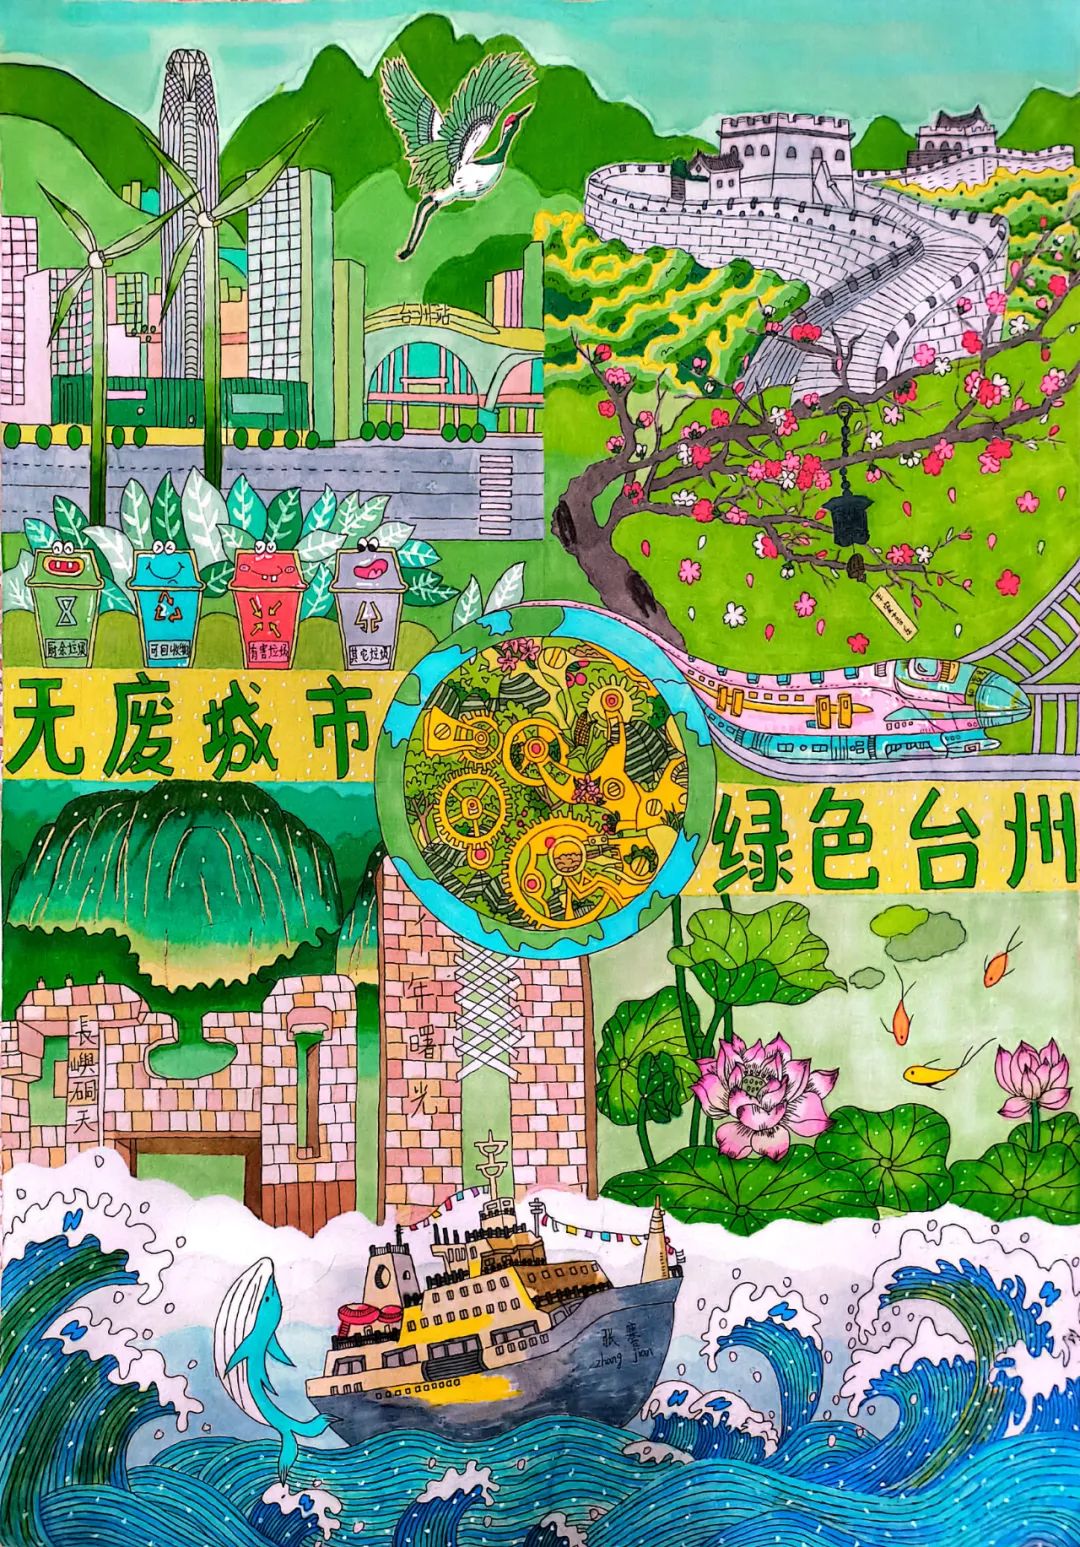 台州市无废城市建设宣传海报设计大赛获奖名单揭晓